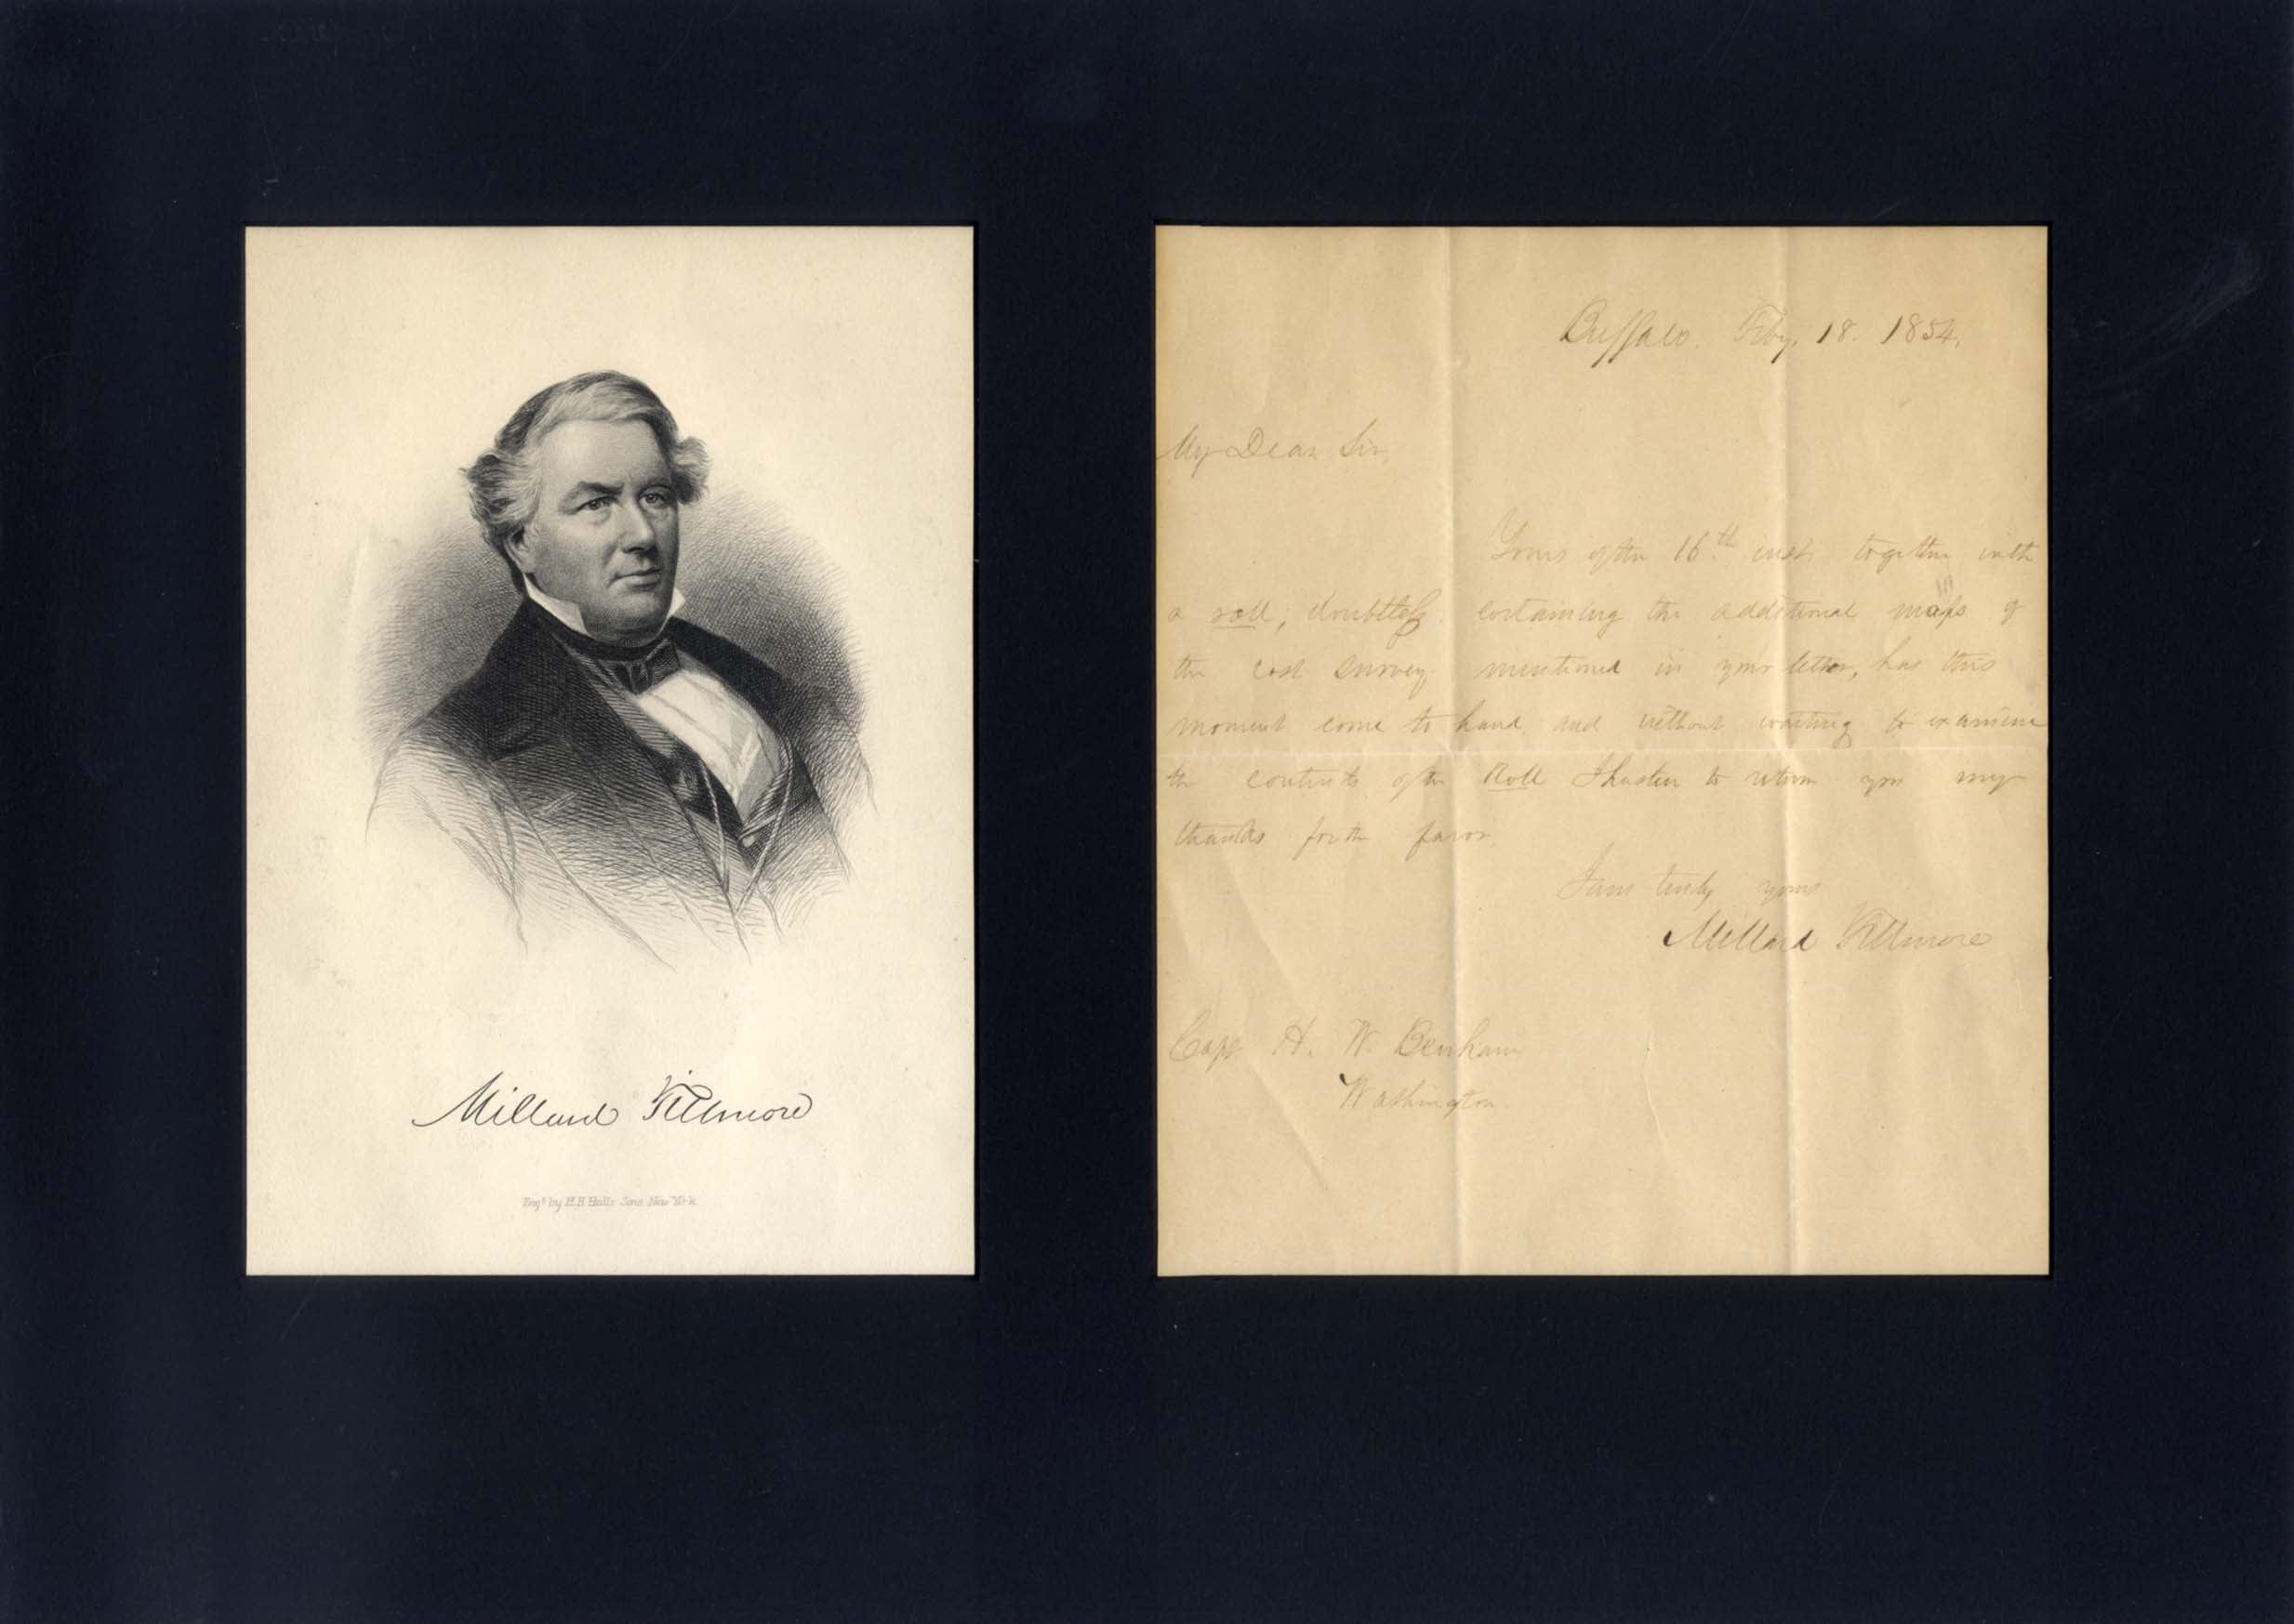 Millard Fillmore Autograph Autogramm | ID 8090164822165